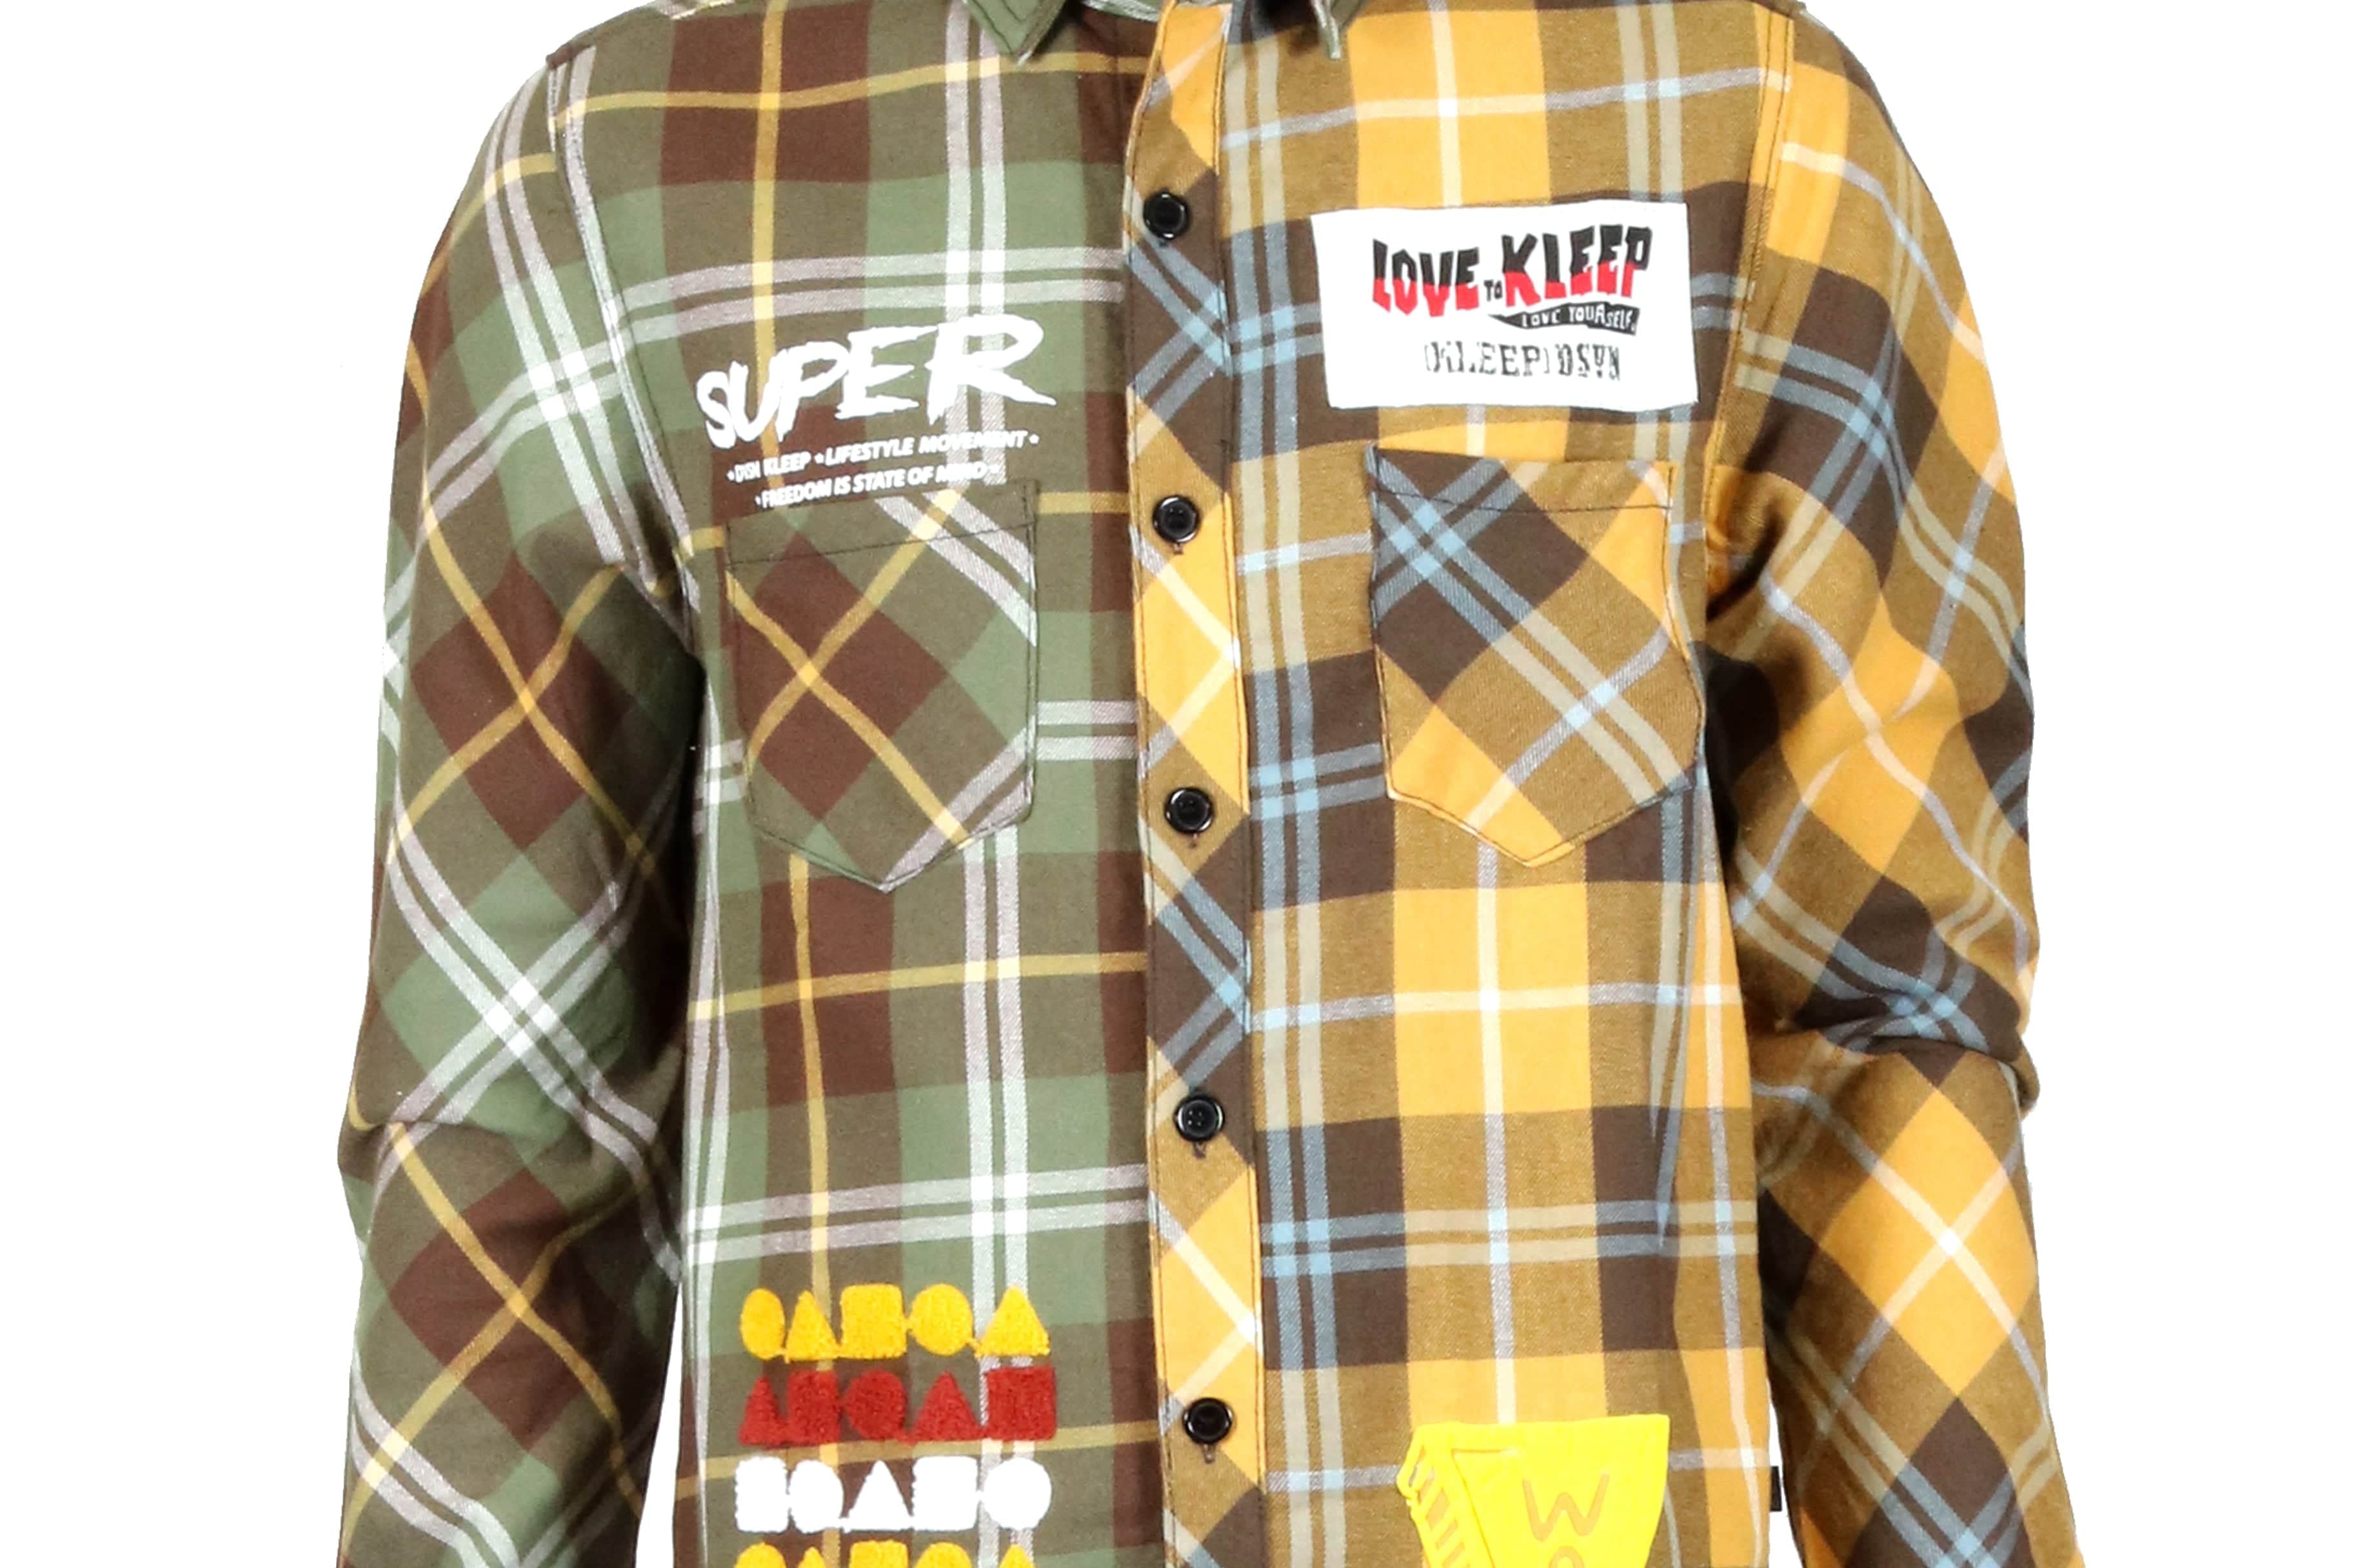 KLEEP Men's Shirt BISQUE Men's premium flannel button down shirt